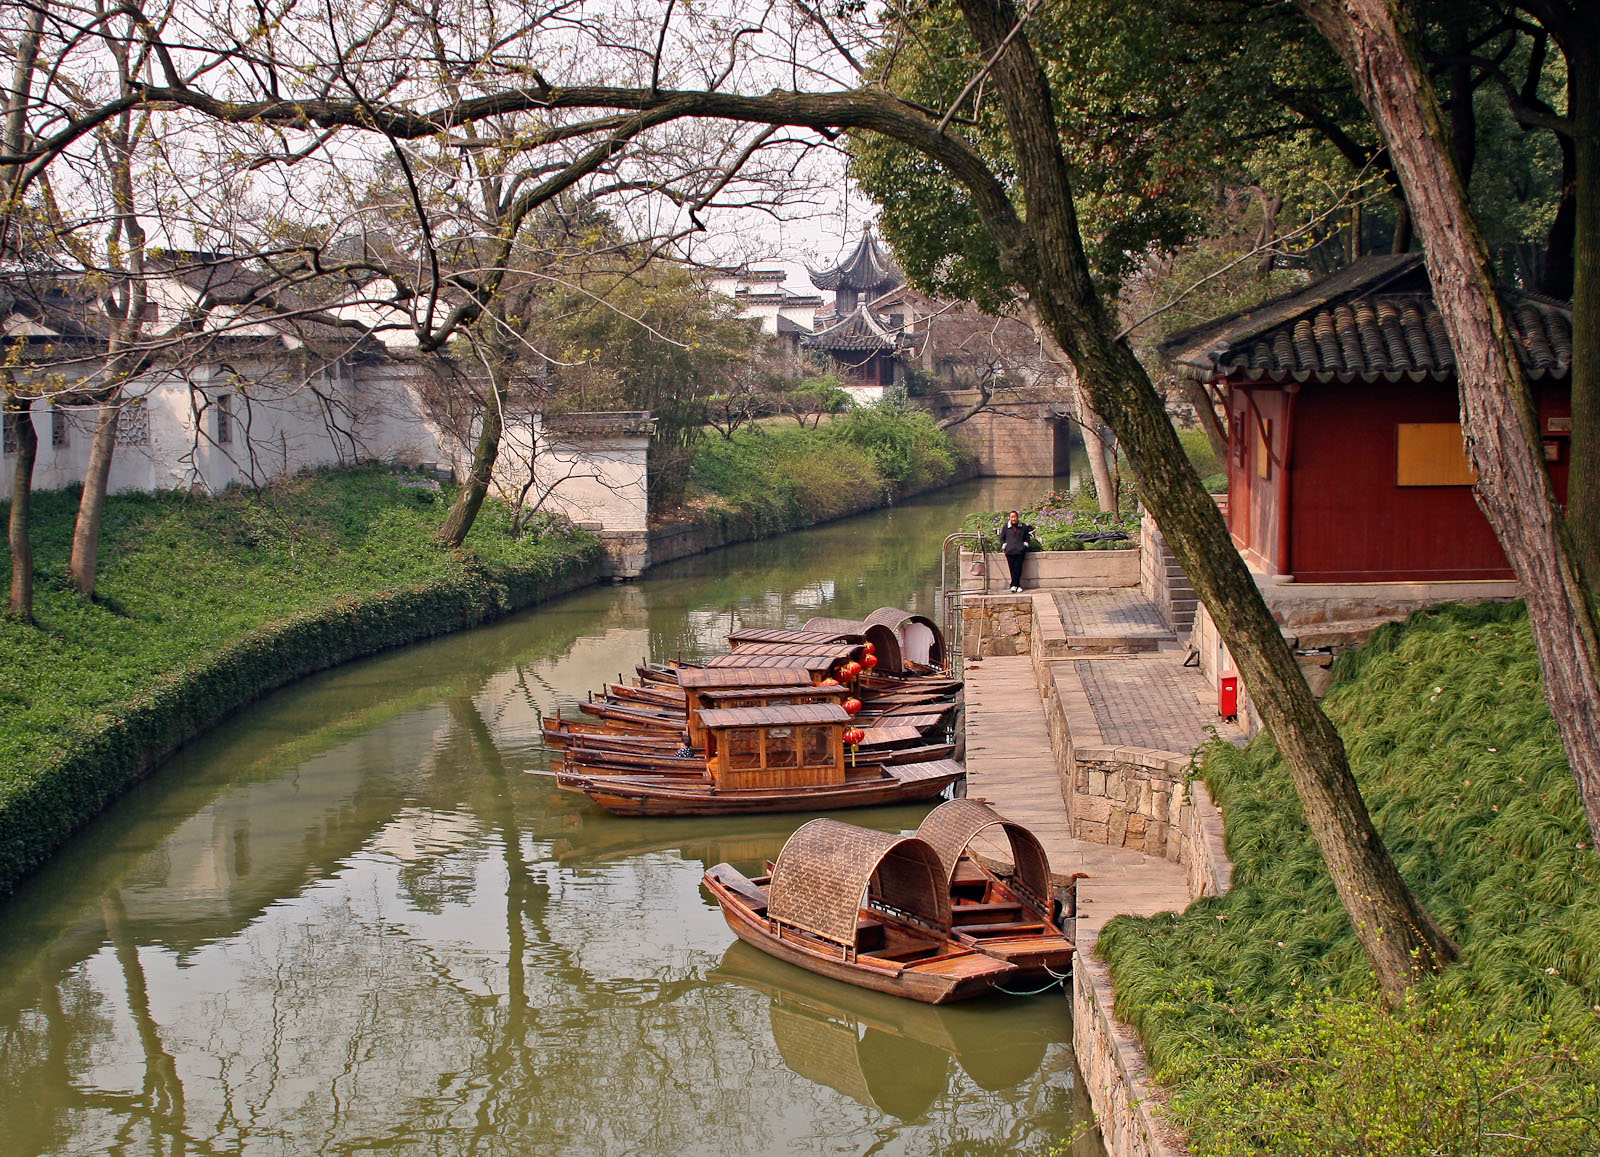 Sampans on Canal-Suzhou, China